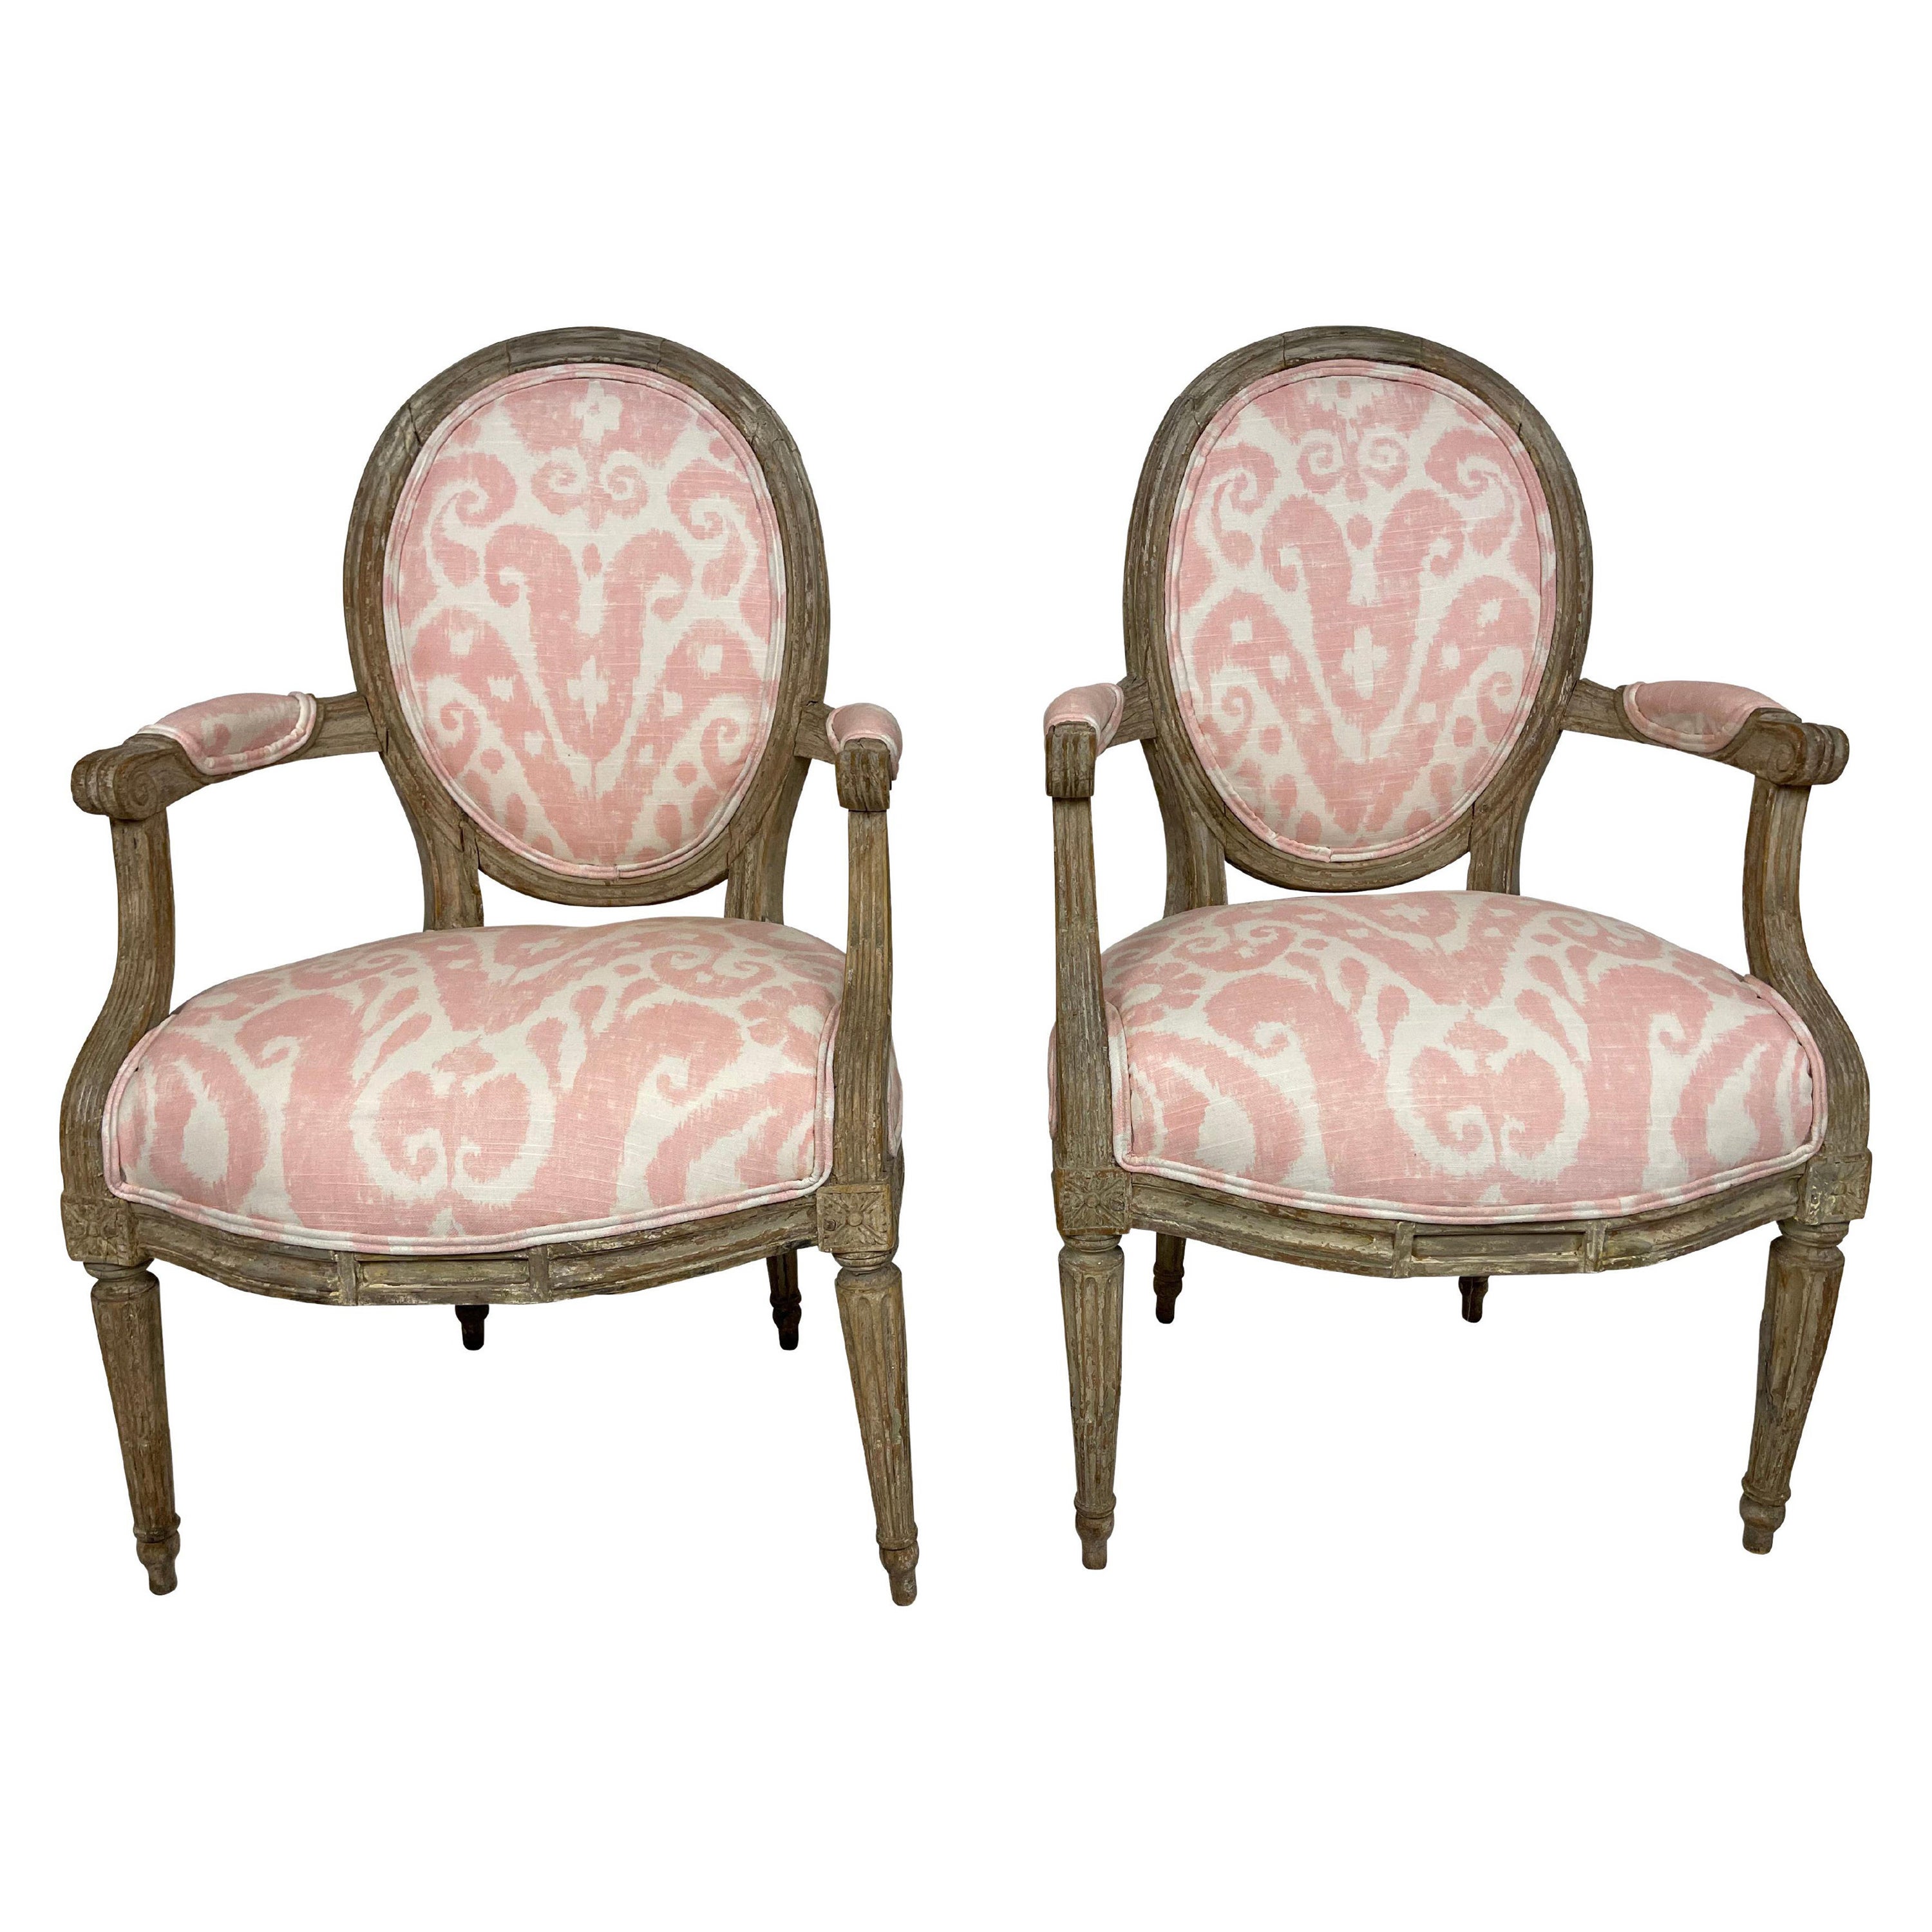 Paire de fauteuils français de style Louis XVI peints en tissu Ikat rose